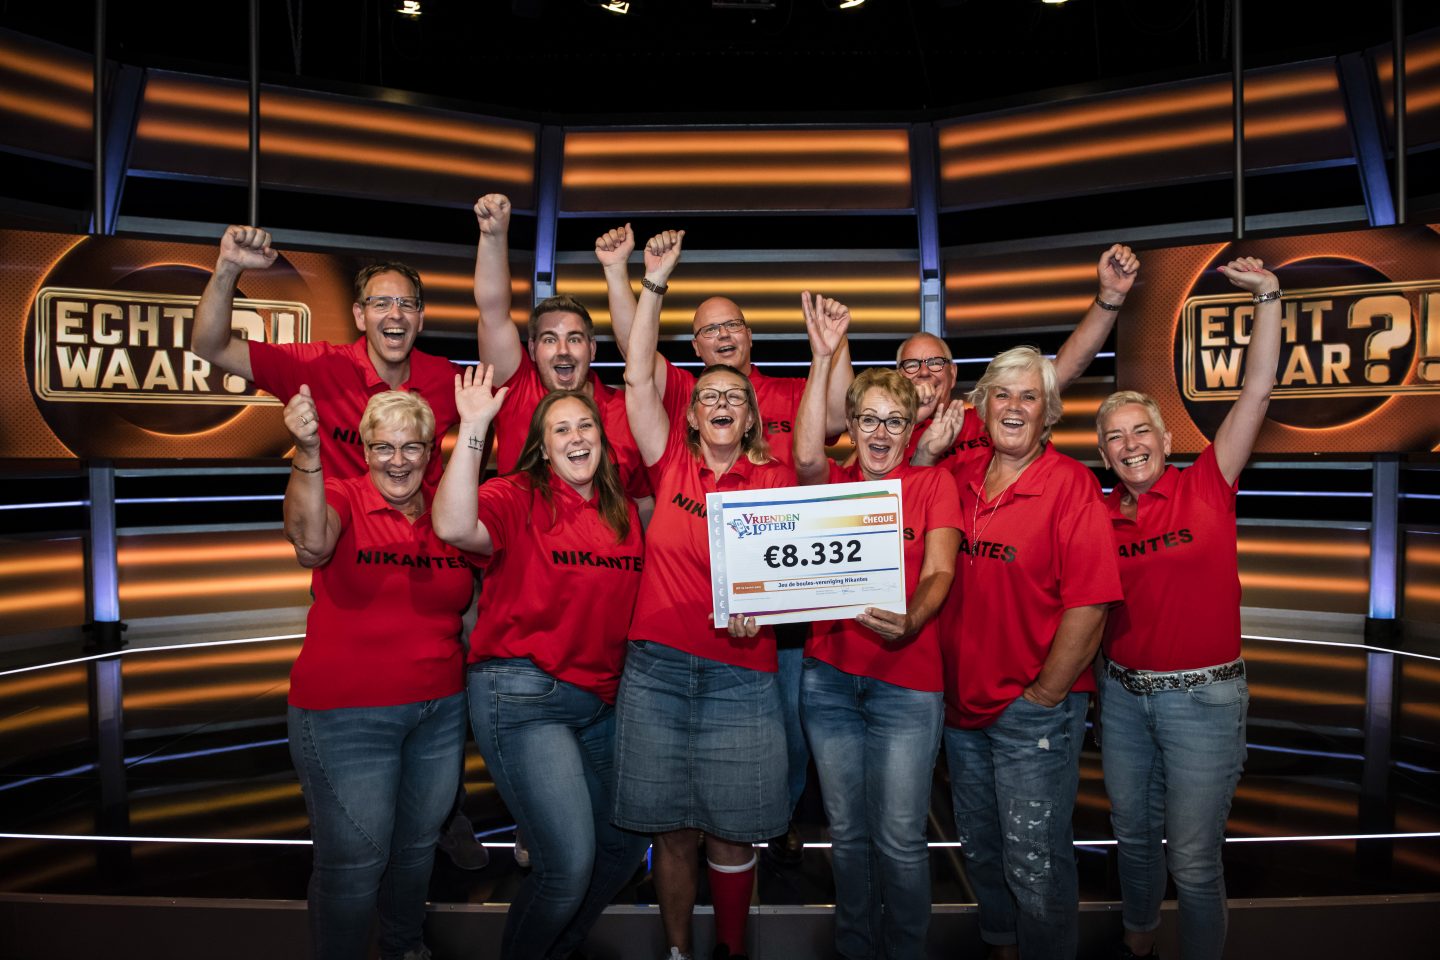 Sportvereniging Nikantes uit Hoogvliet Rotterdam wint € 8.332,00 in SBS6-programma Echt Waar